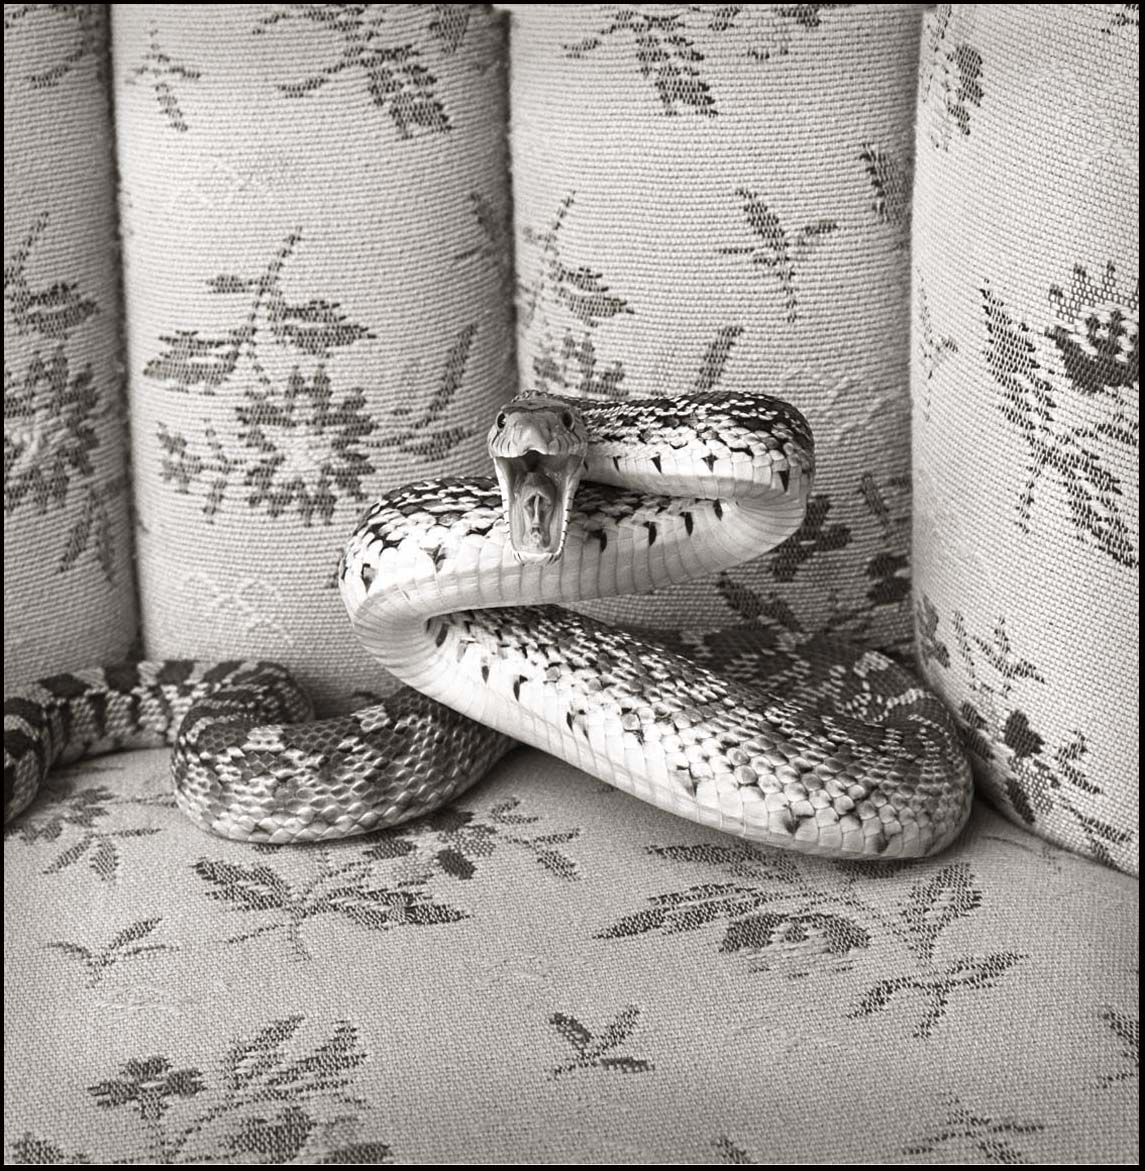 Bull Snake on Sofa _Striking_© James H. Evans